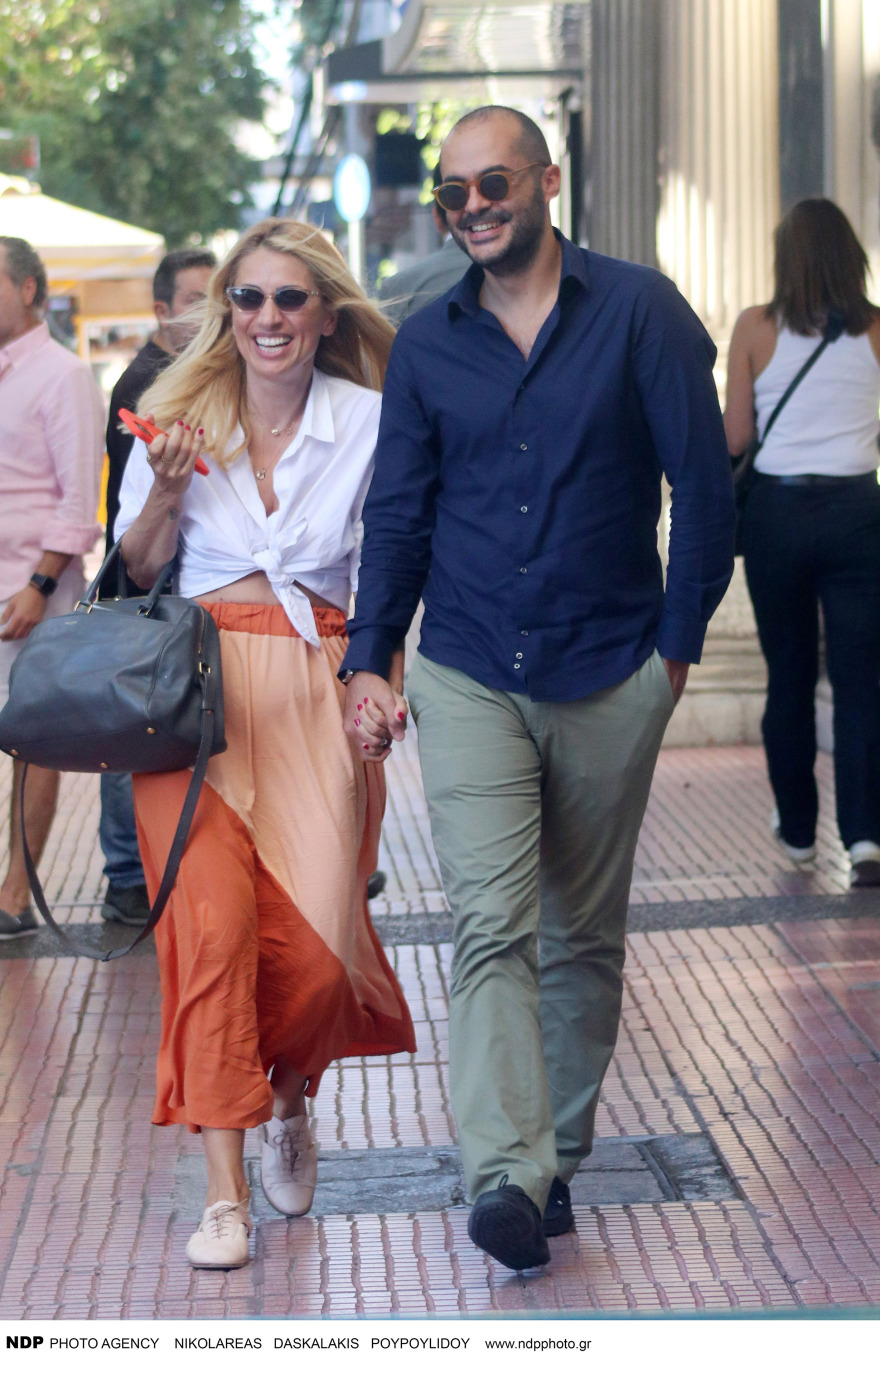 Ηλιάκη, Μαρία Ηλιάκη: Βόλτα με τον σύντροφό της στο κέντρο της Αθήνας (Φώτο)